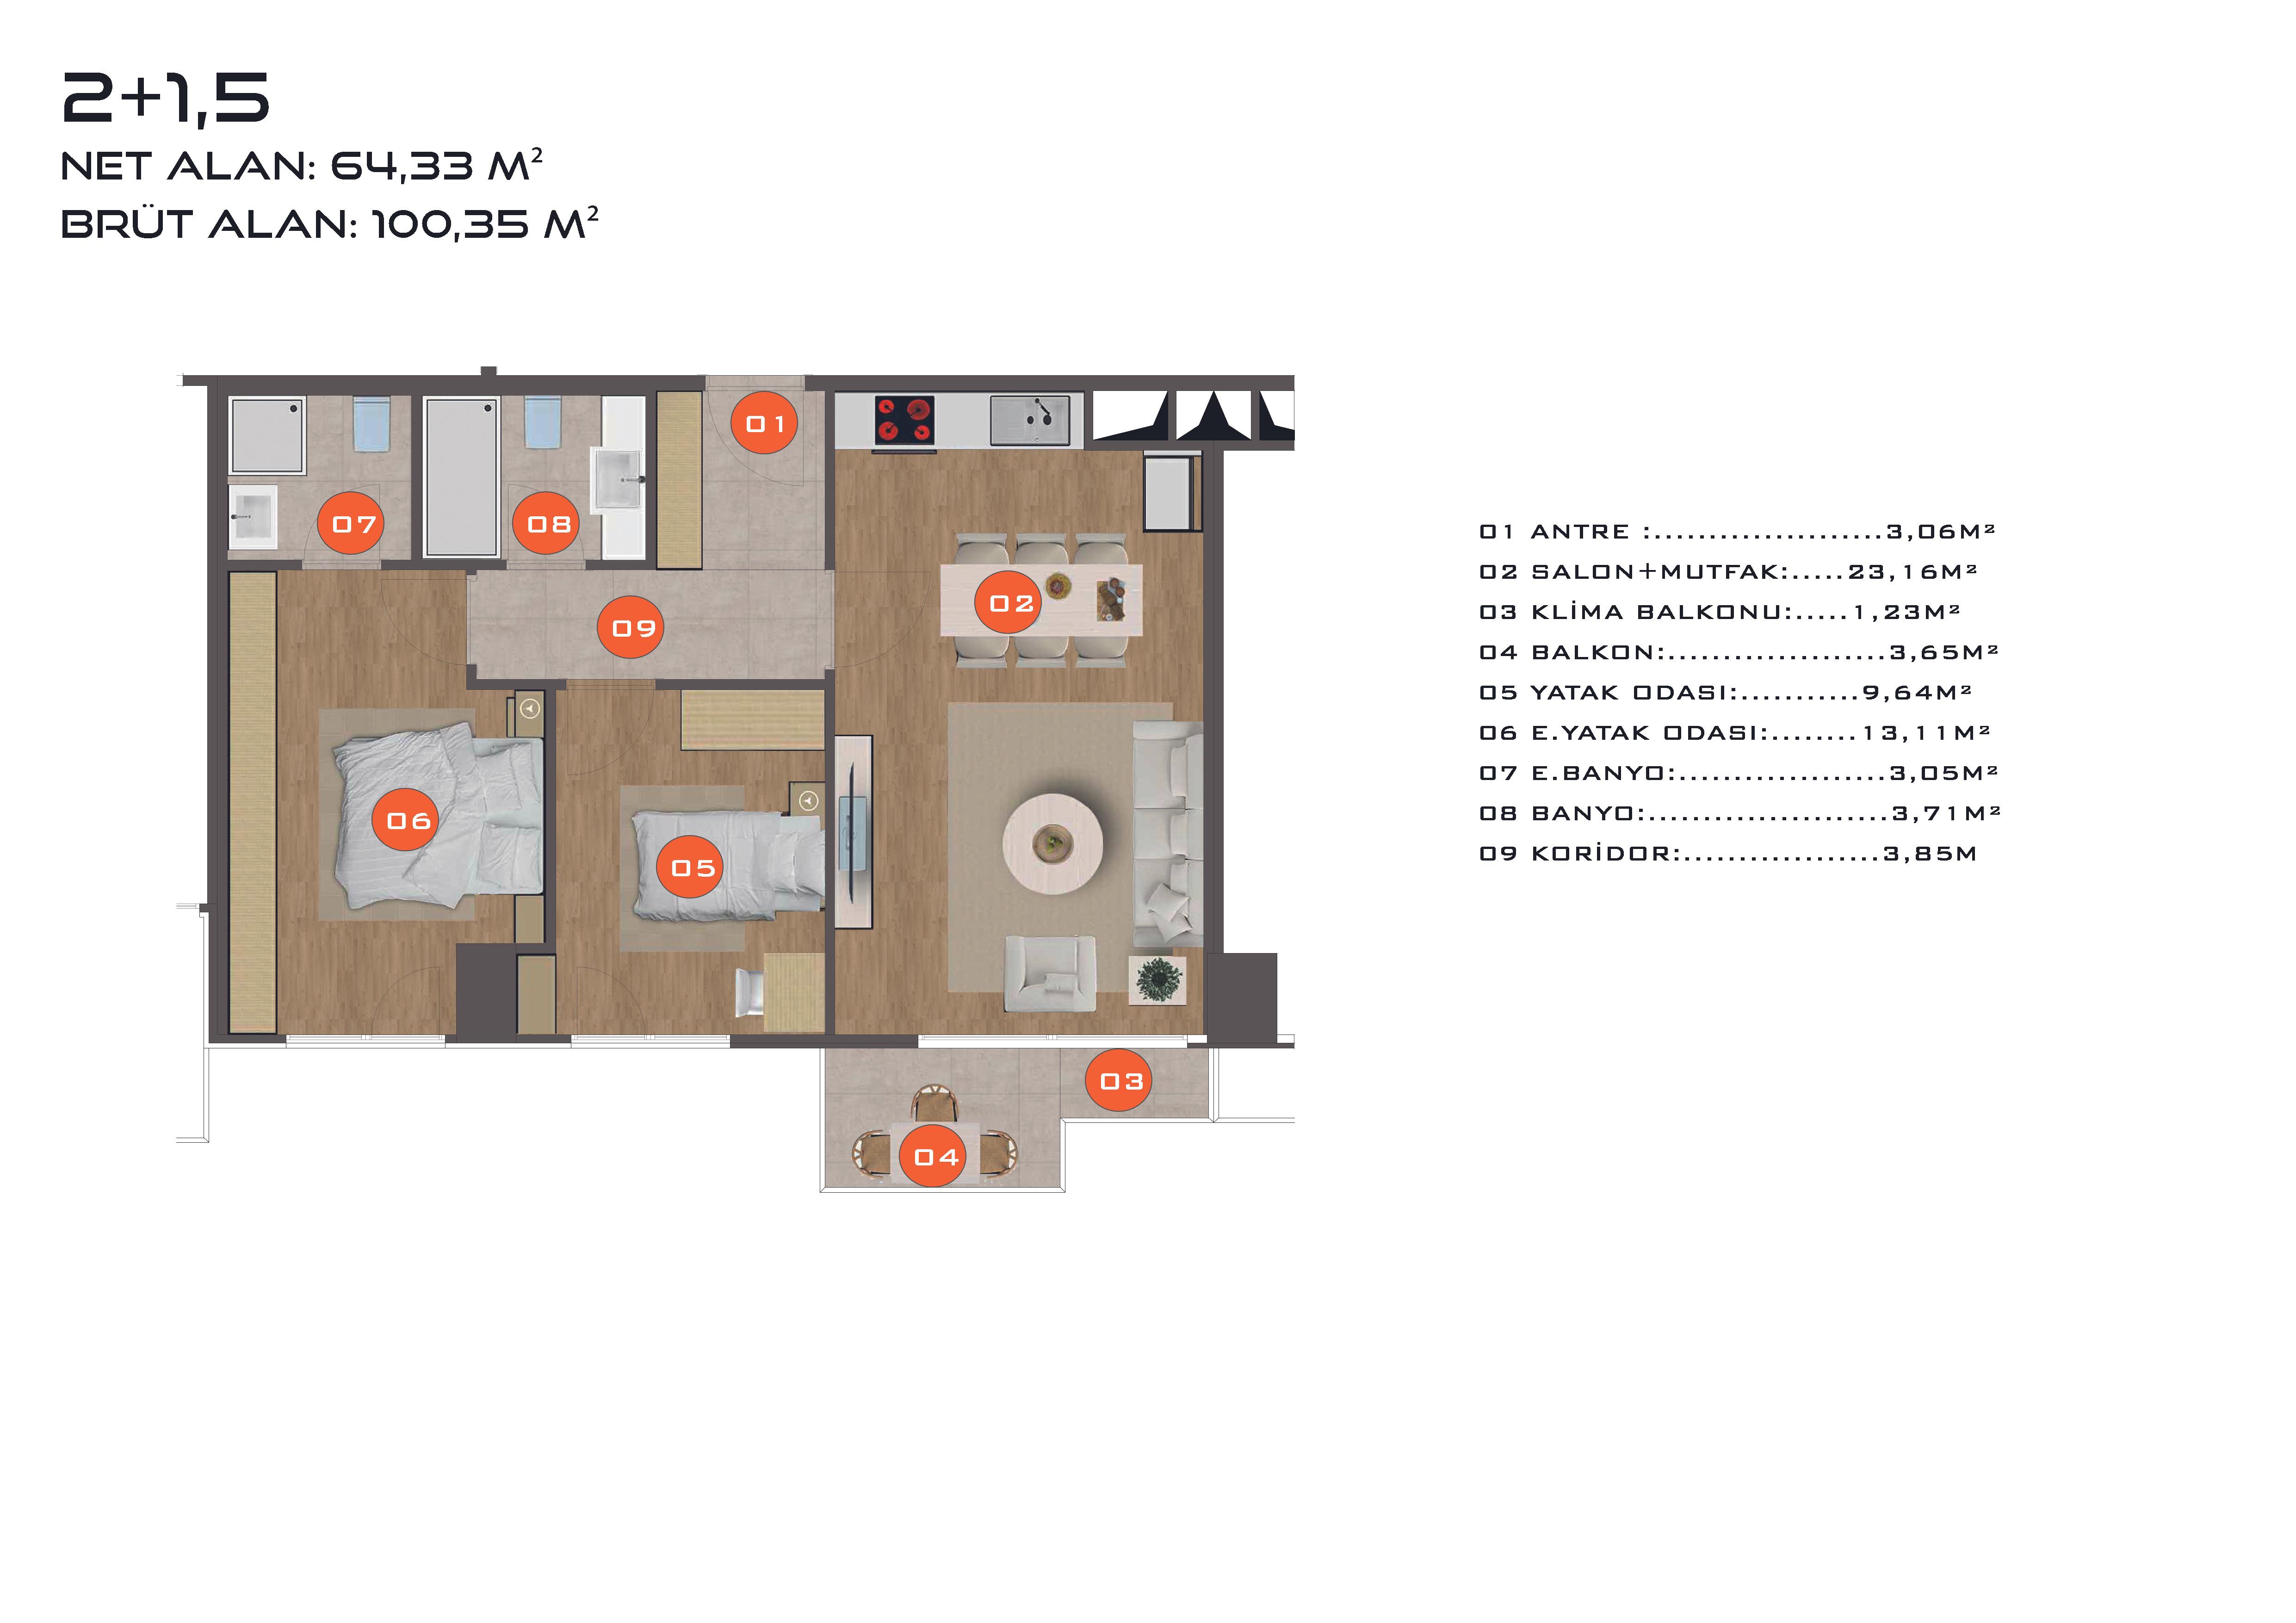 DKY Sahil 2+1.5 Floor Plan 161m2